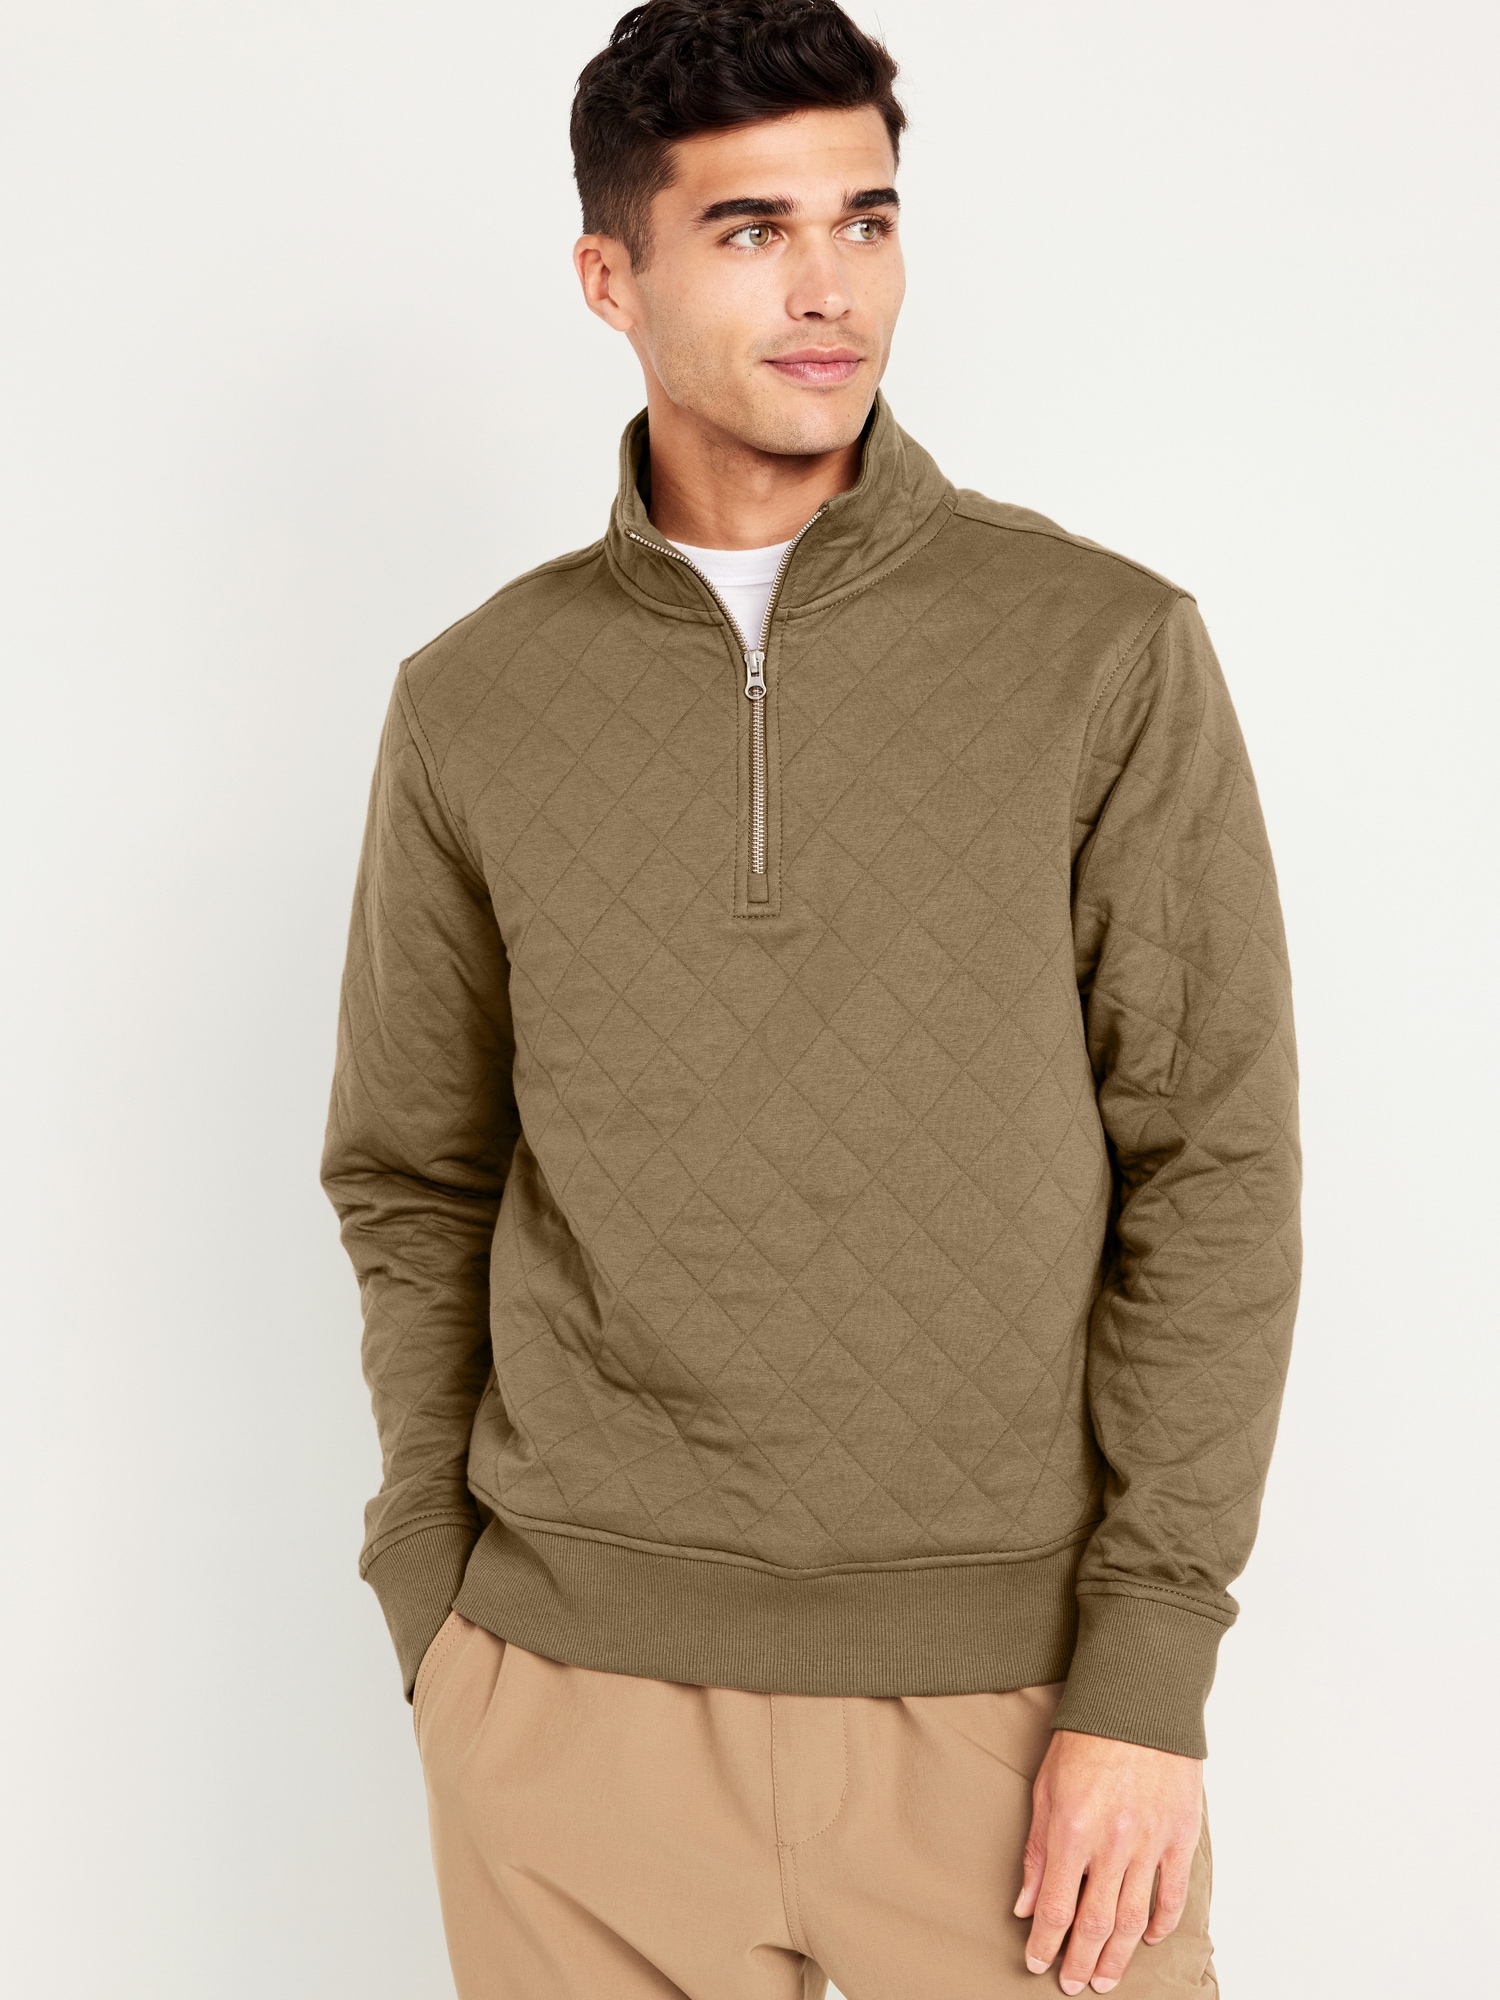 Men’s Quarter-Zip Pullover